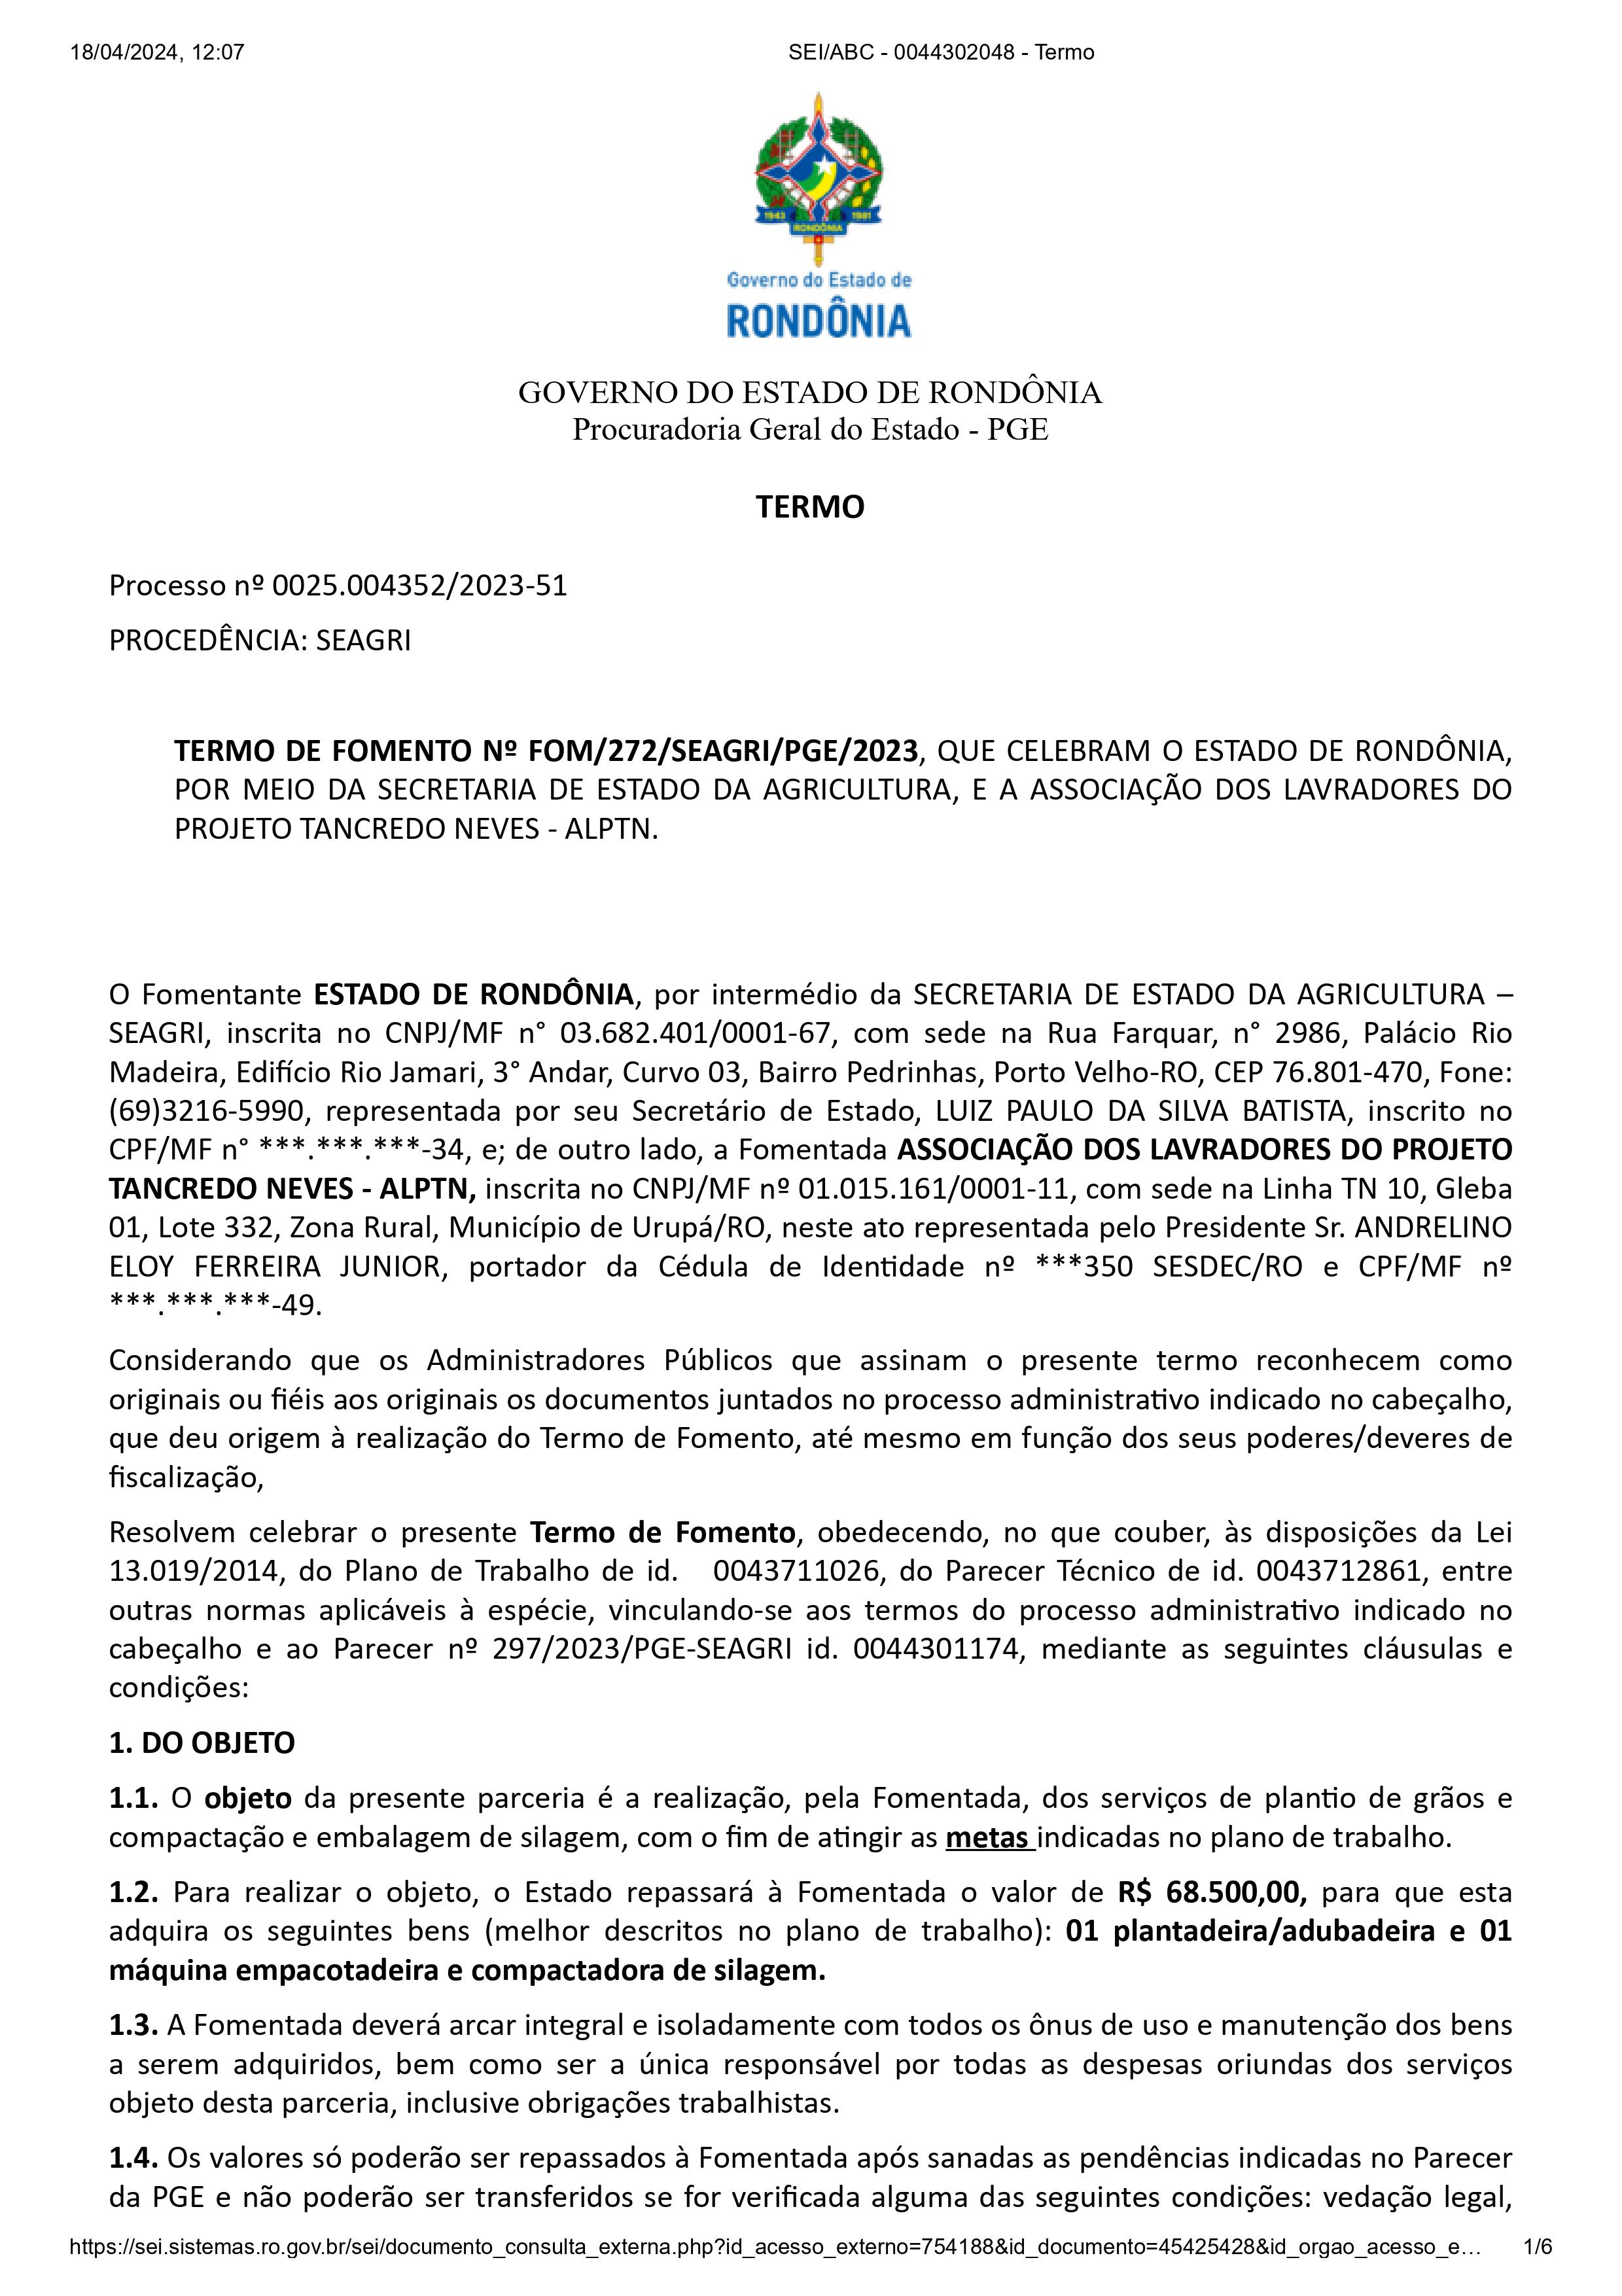 TERMO DE FOMENTO Nº FOM/272/SEAGRI/PGE/2023